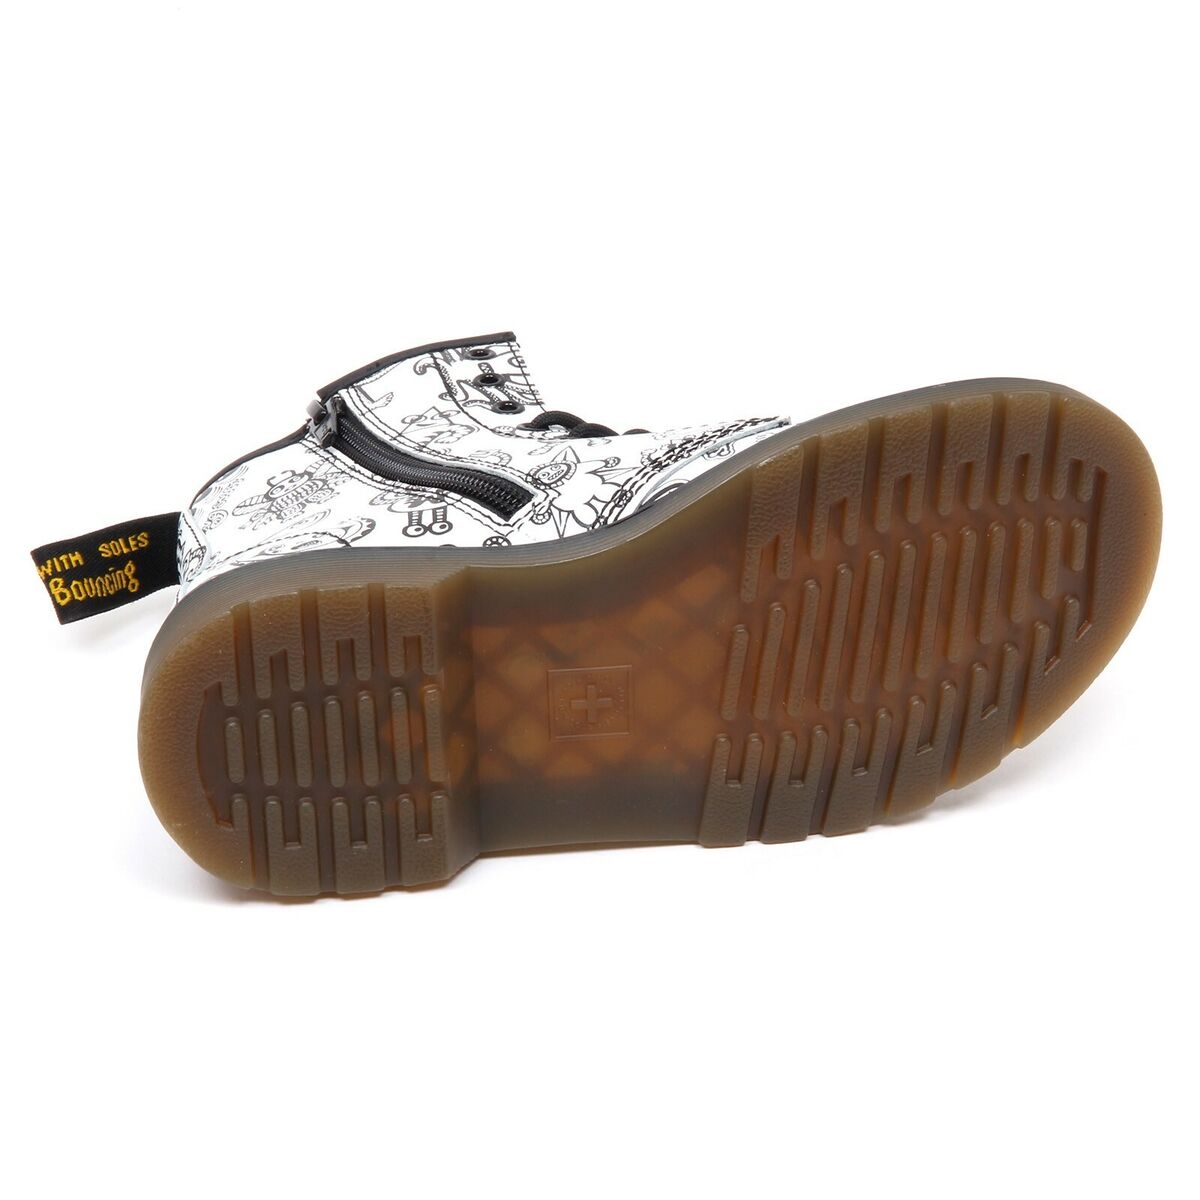 D3844 caja) anfibio niña DR. MARTENS negro/blanco bota zapato | eBay